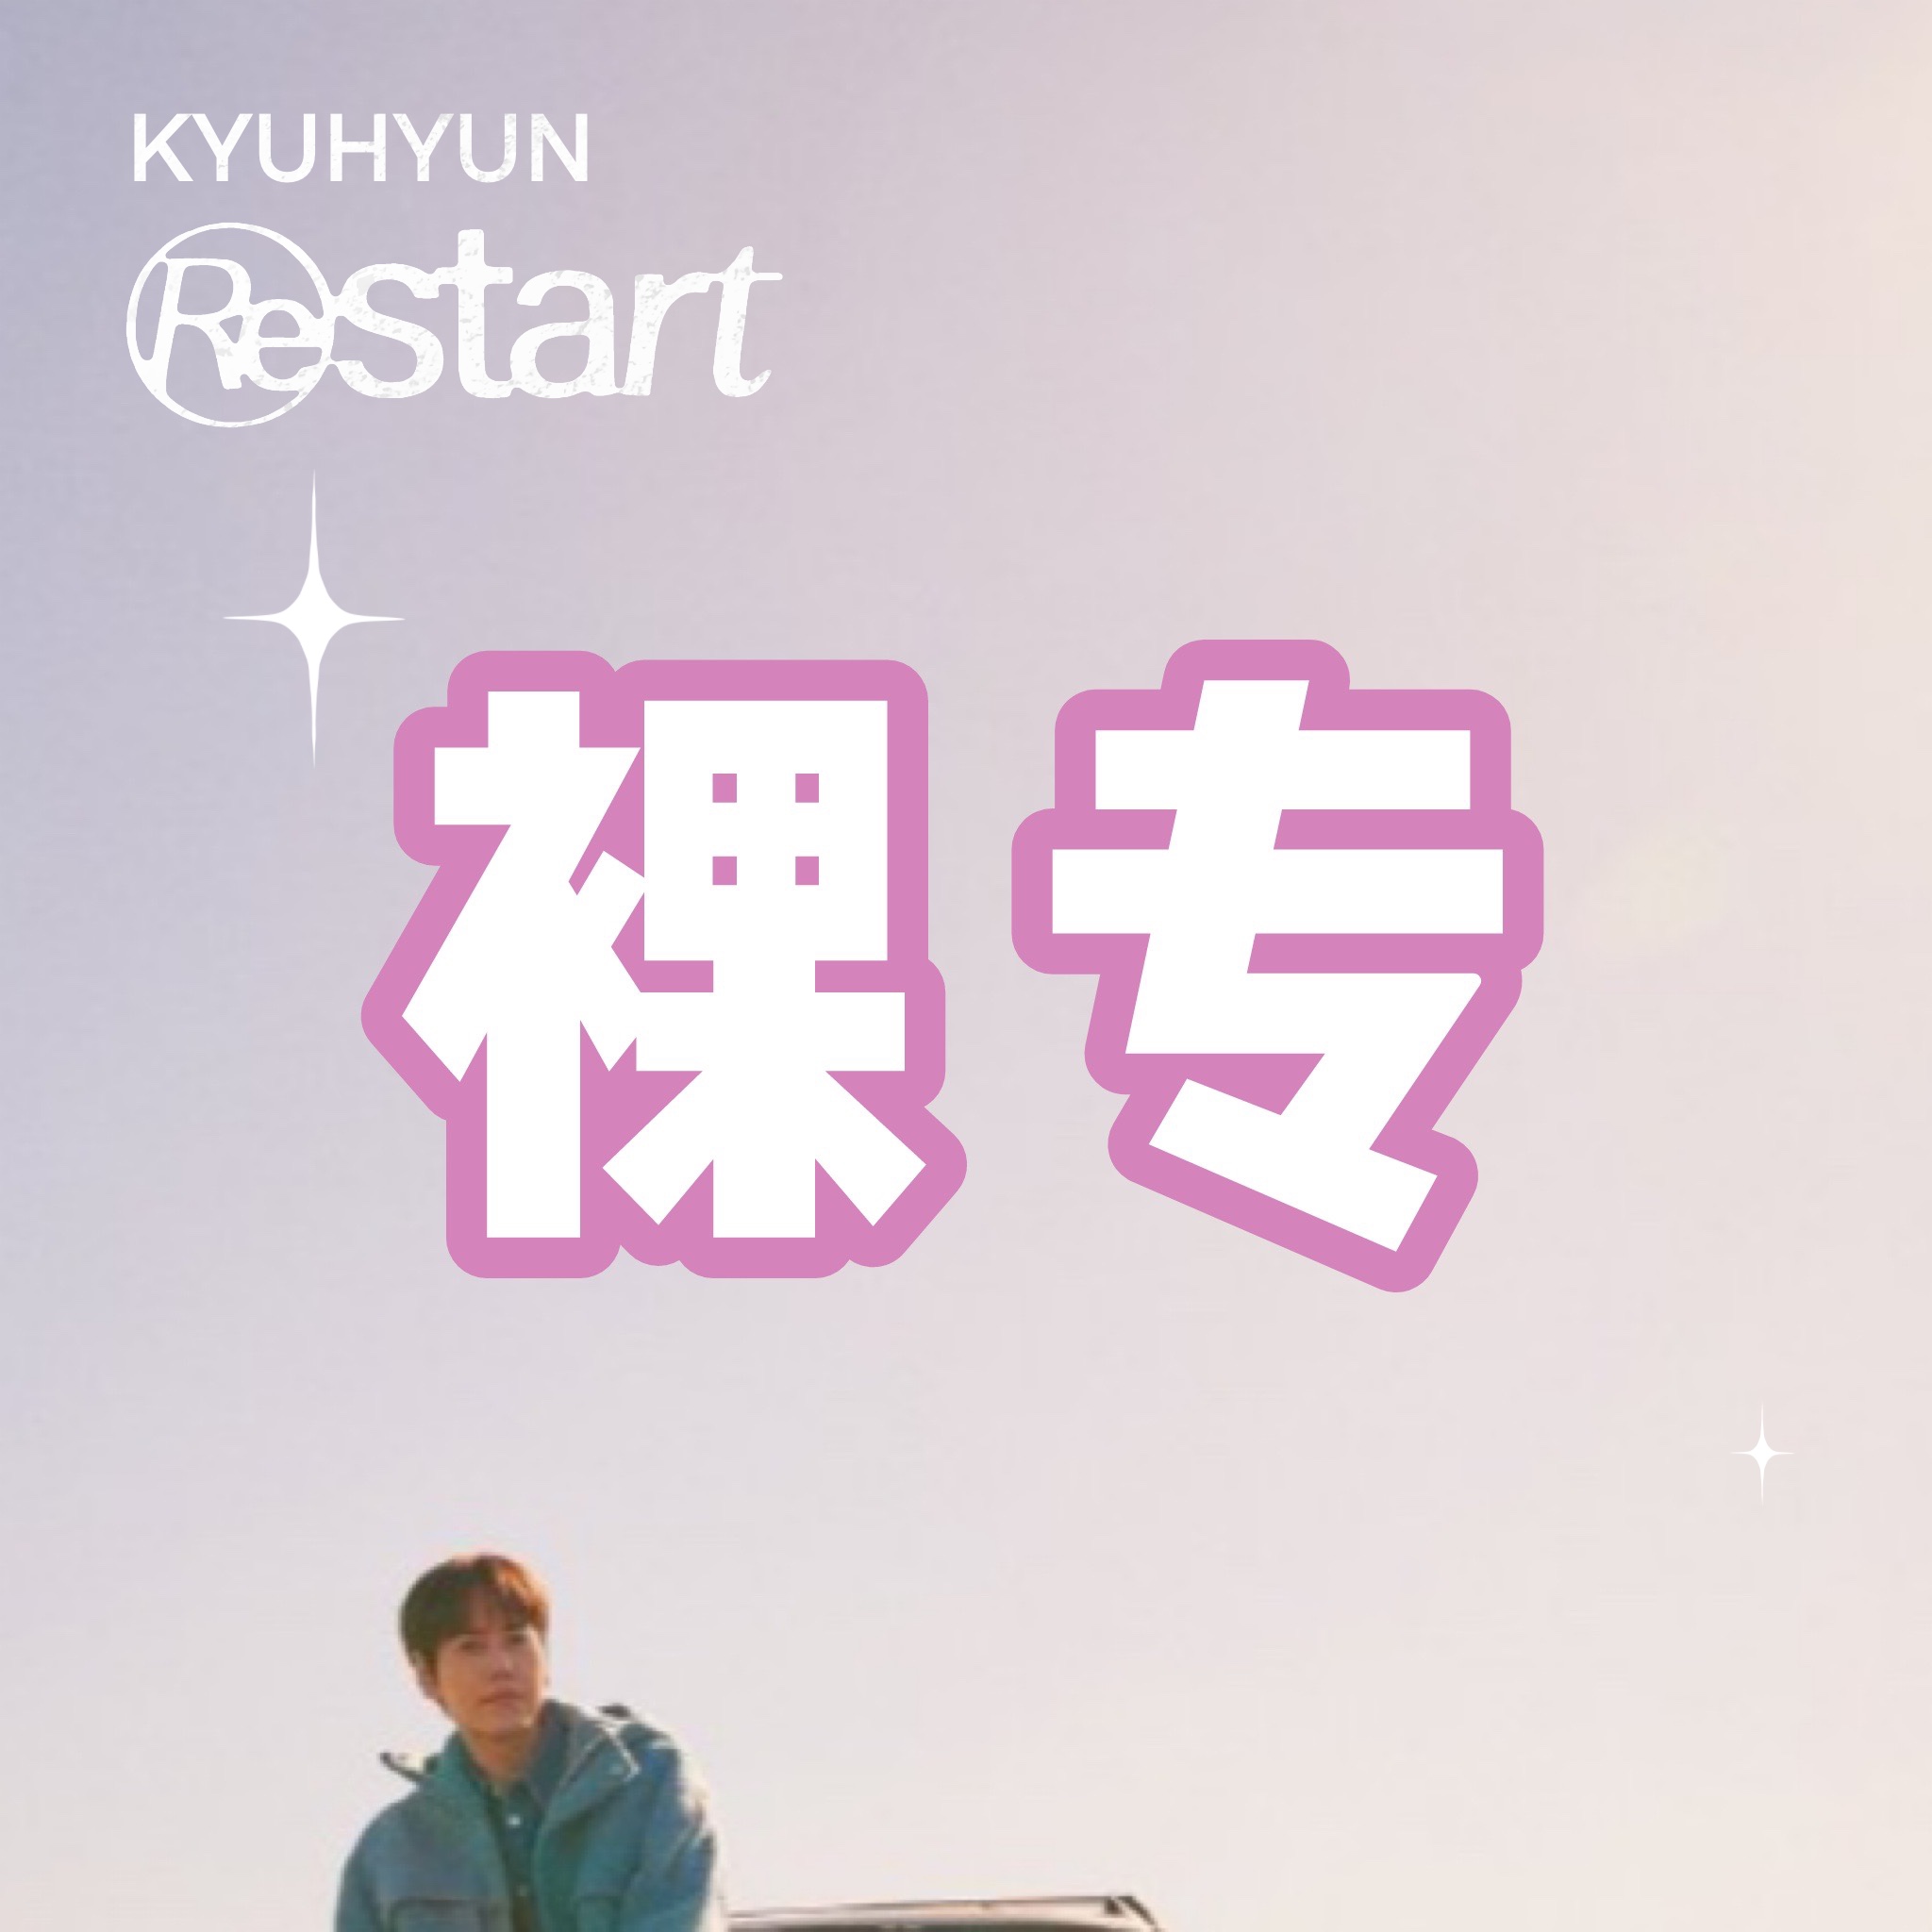 [全款 裸专] [Ktown4u特典赠送] [2CD 套装] 曺圭贤 - EP 专辑 [Restart]_WishingStar_圭贤许愿星